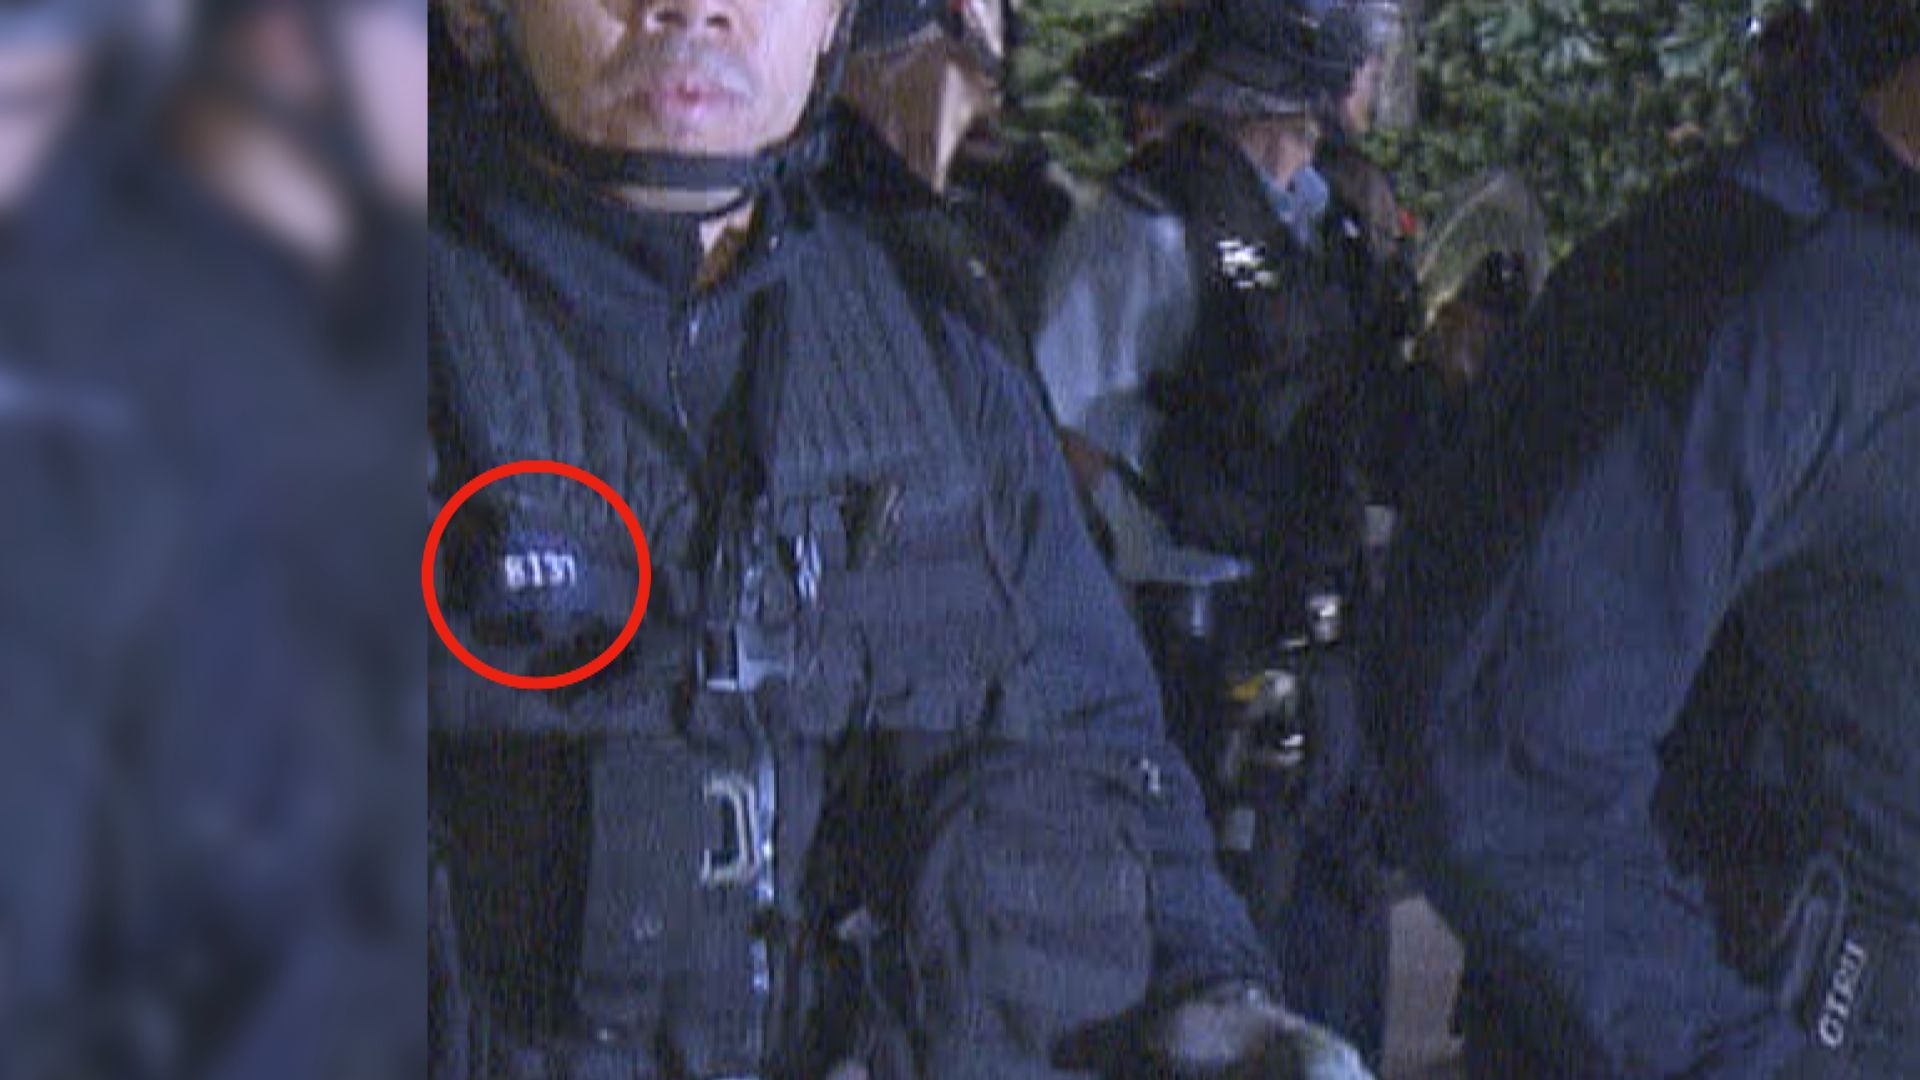 本台發現部分速龍小隊近日行動曾在胸口掛上警員編號